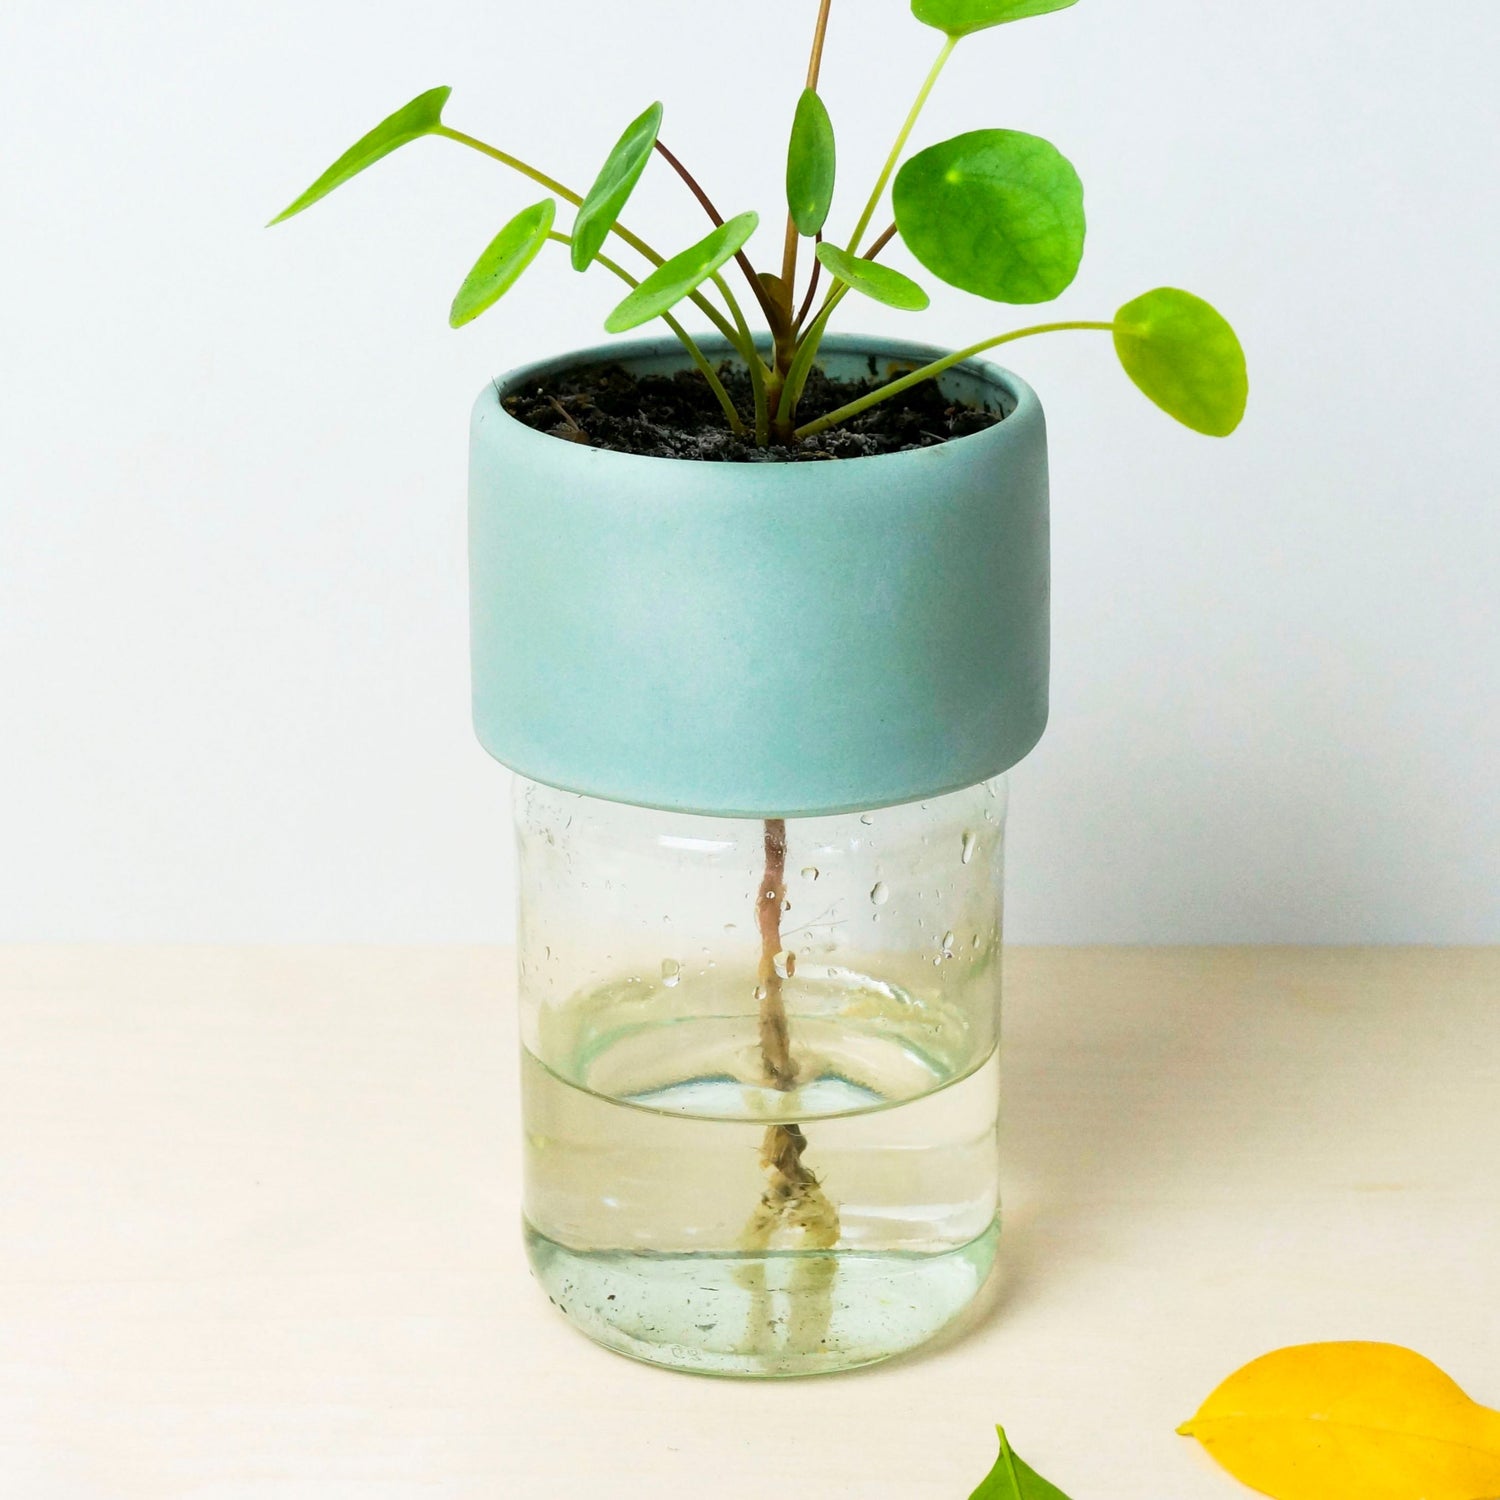 Plant Jar